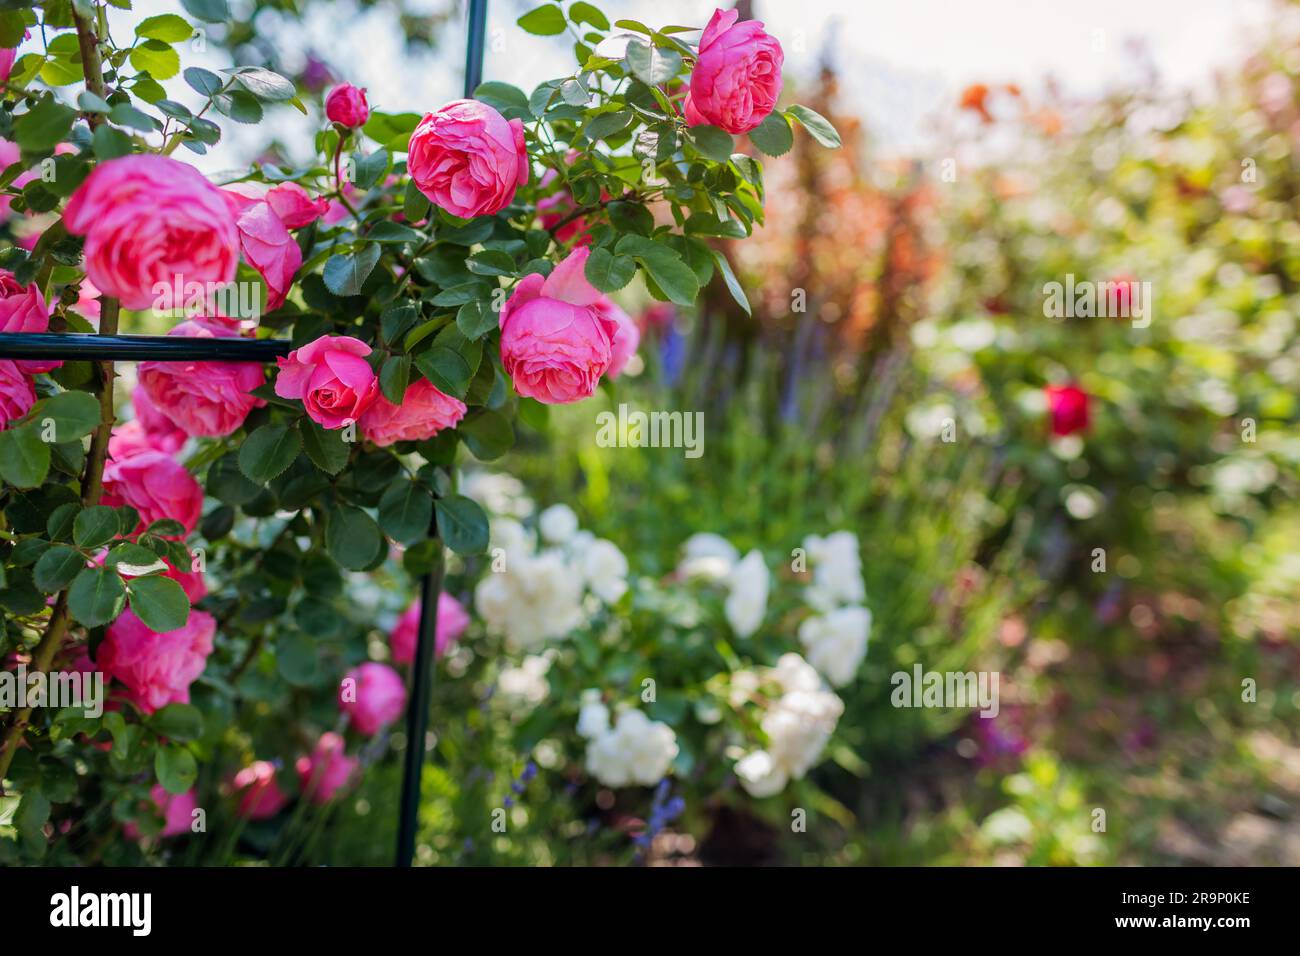 Nahaufnahme der rosafarbenen Leonardo da Vinci floribunda Rose, die im Sommergarten auf dem Bogen blüht. Blütenhaufen wachsen auf Spalier mit Lavendel Stockfoto